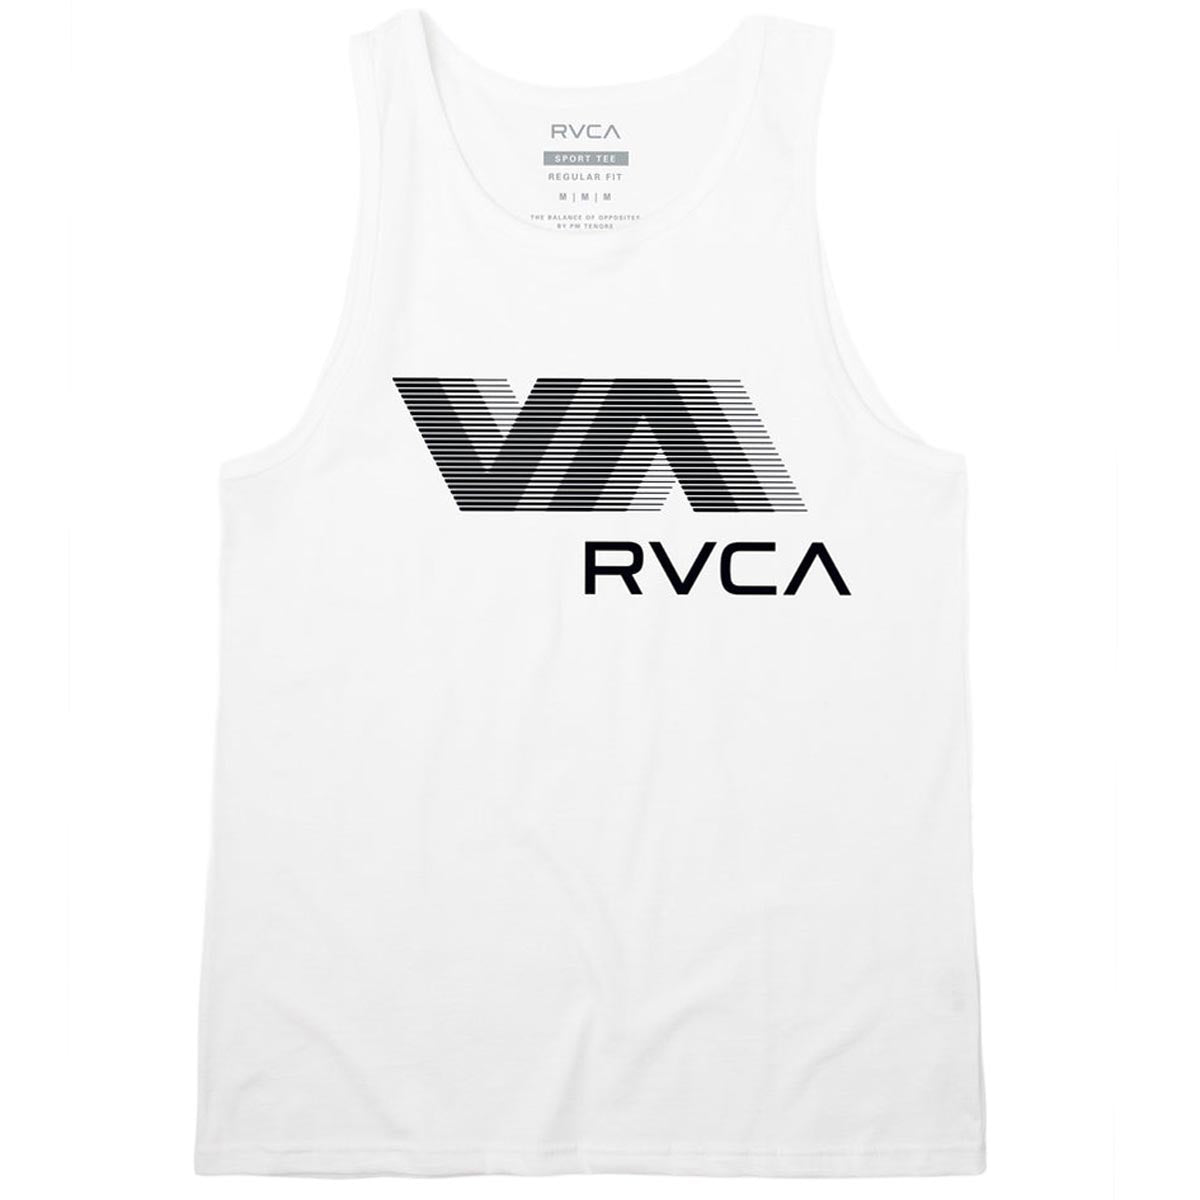 RVCA VA Blur Tank Top - New White image 1